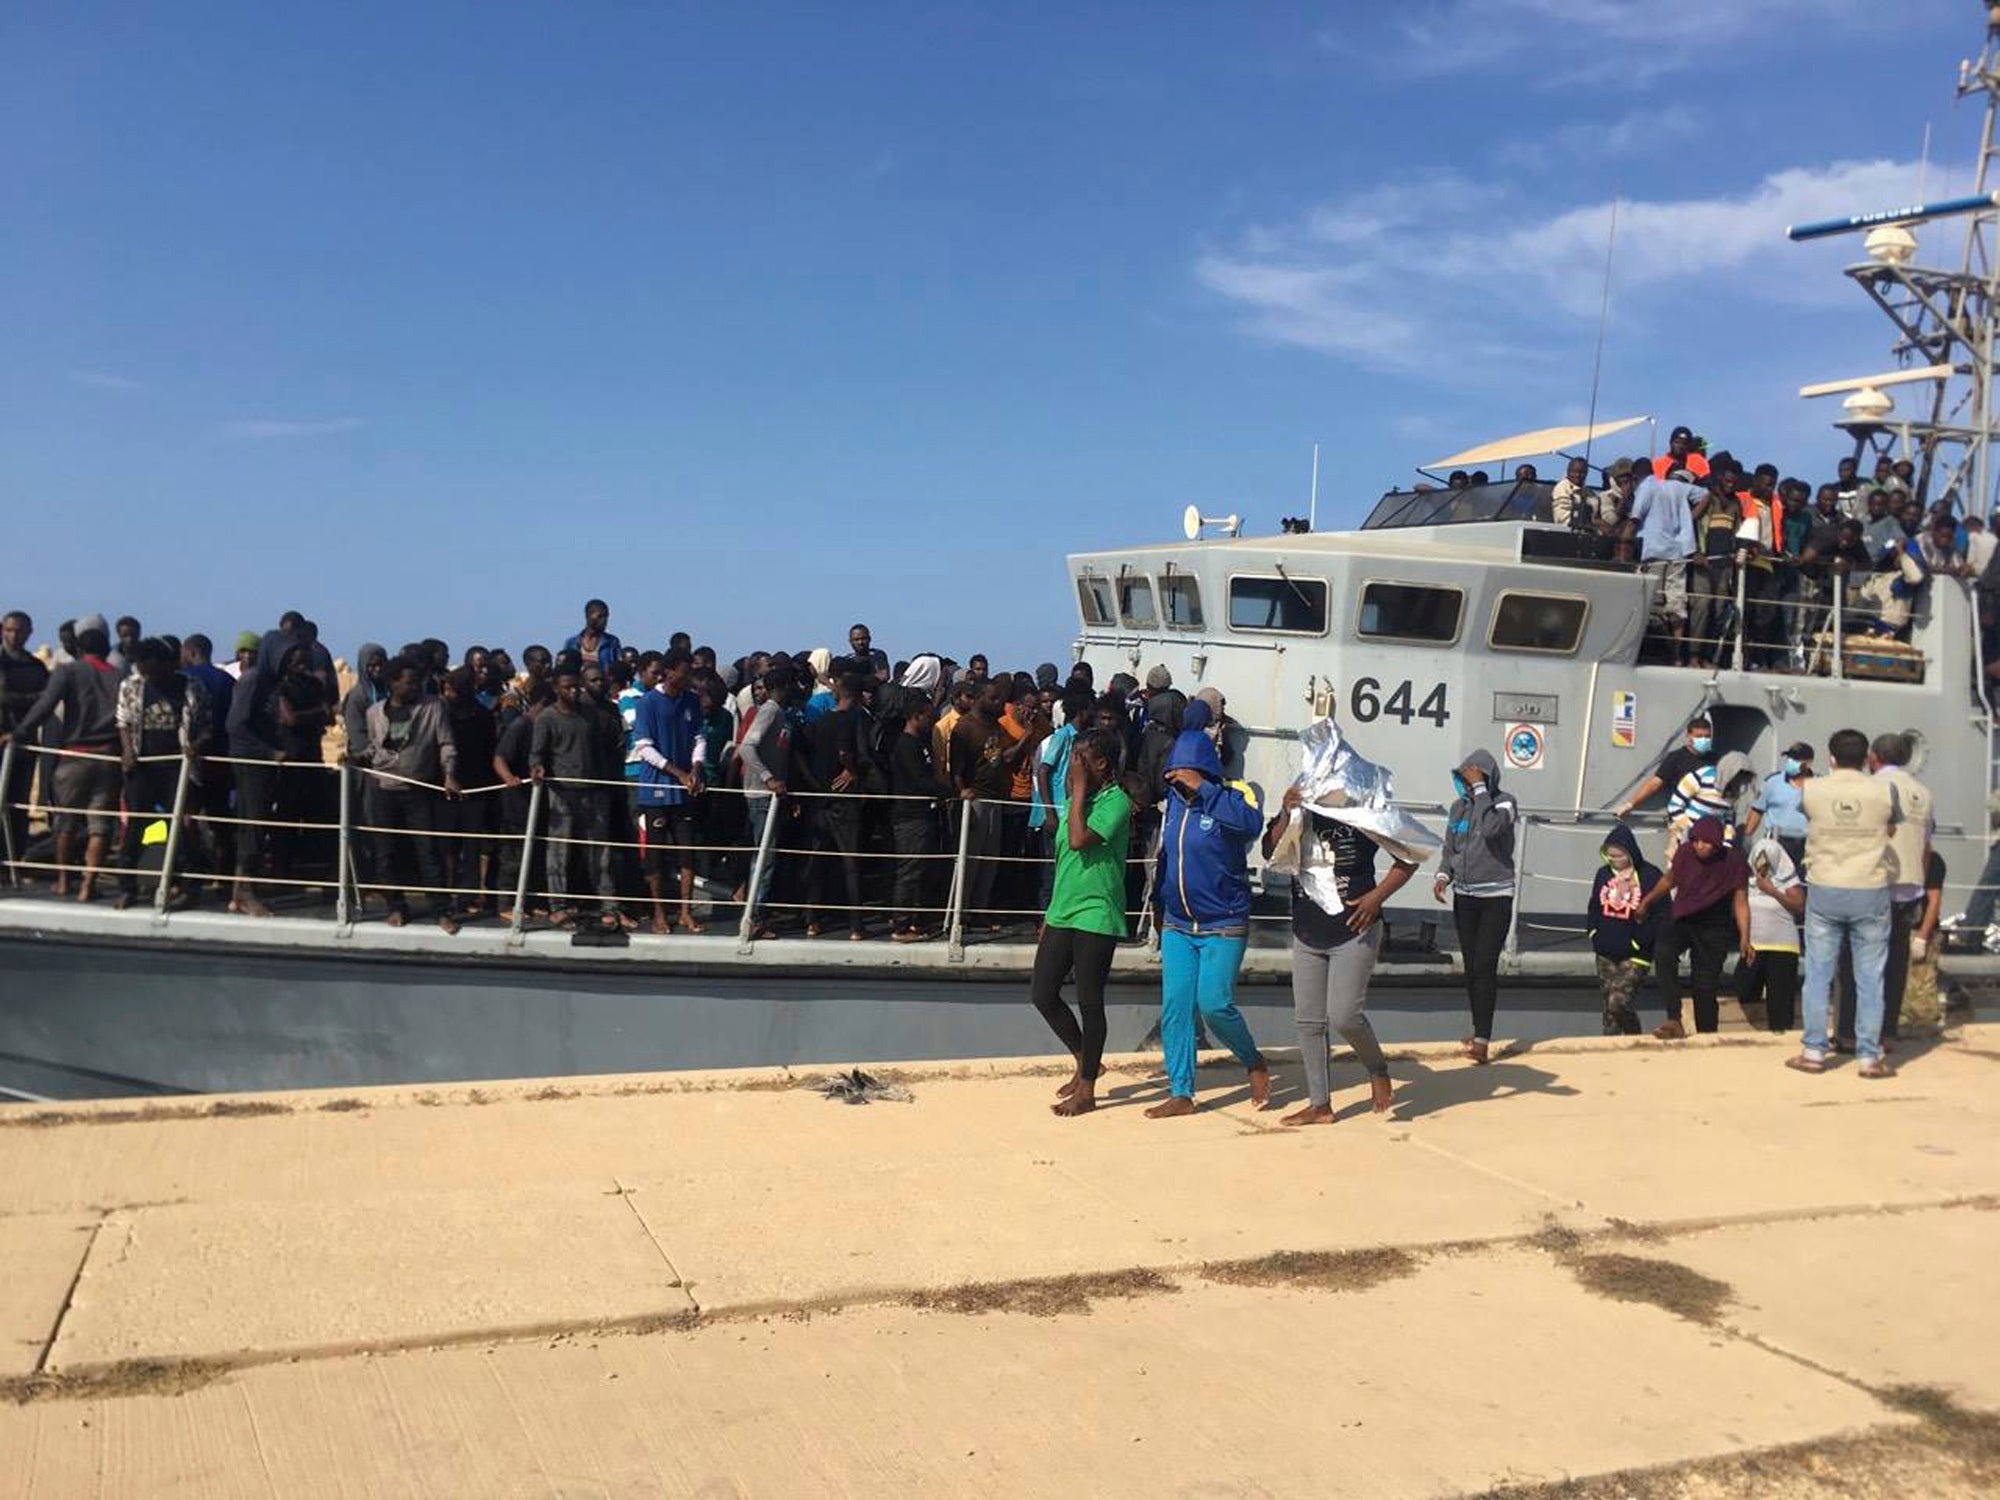 Foto rilasciata dalla Guardia Costiera libica che mostra persone che sbarcano in Libia dopo essere state intercettate a largo, il 24 giugno 2018.